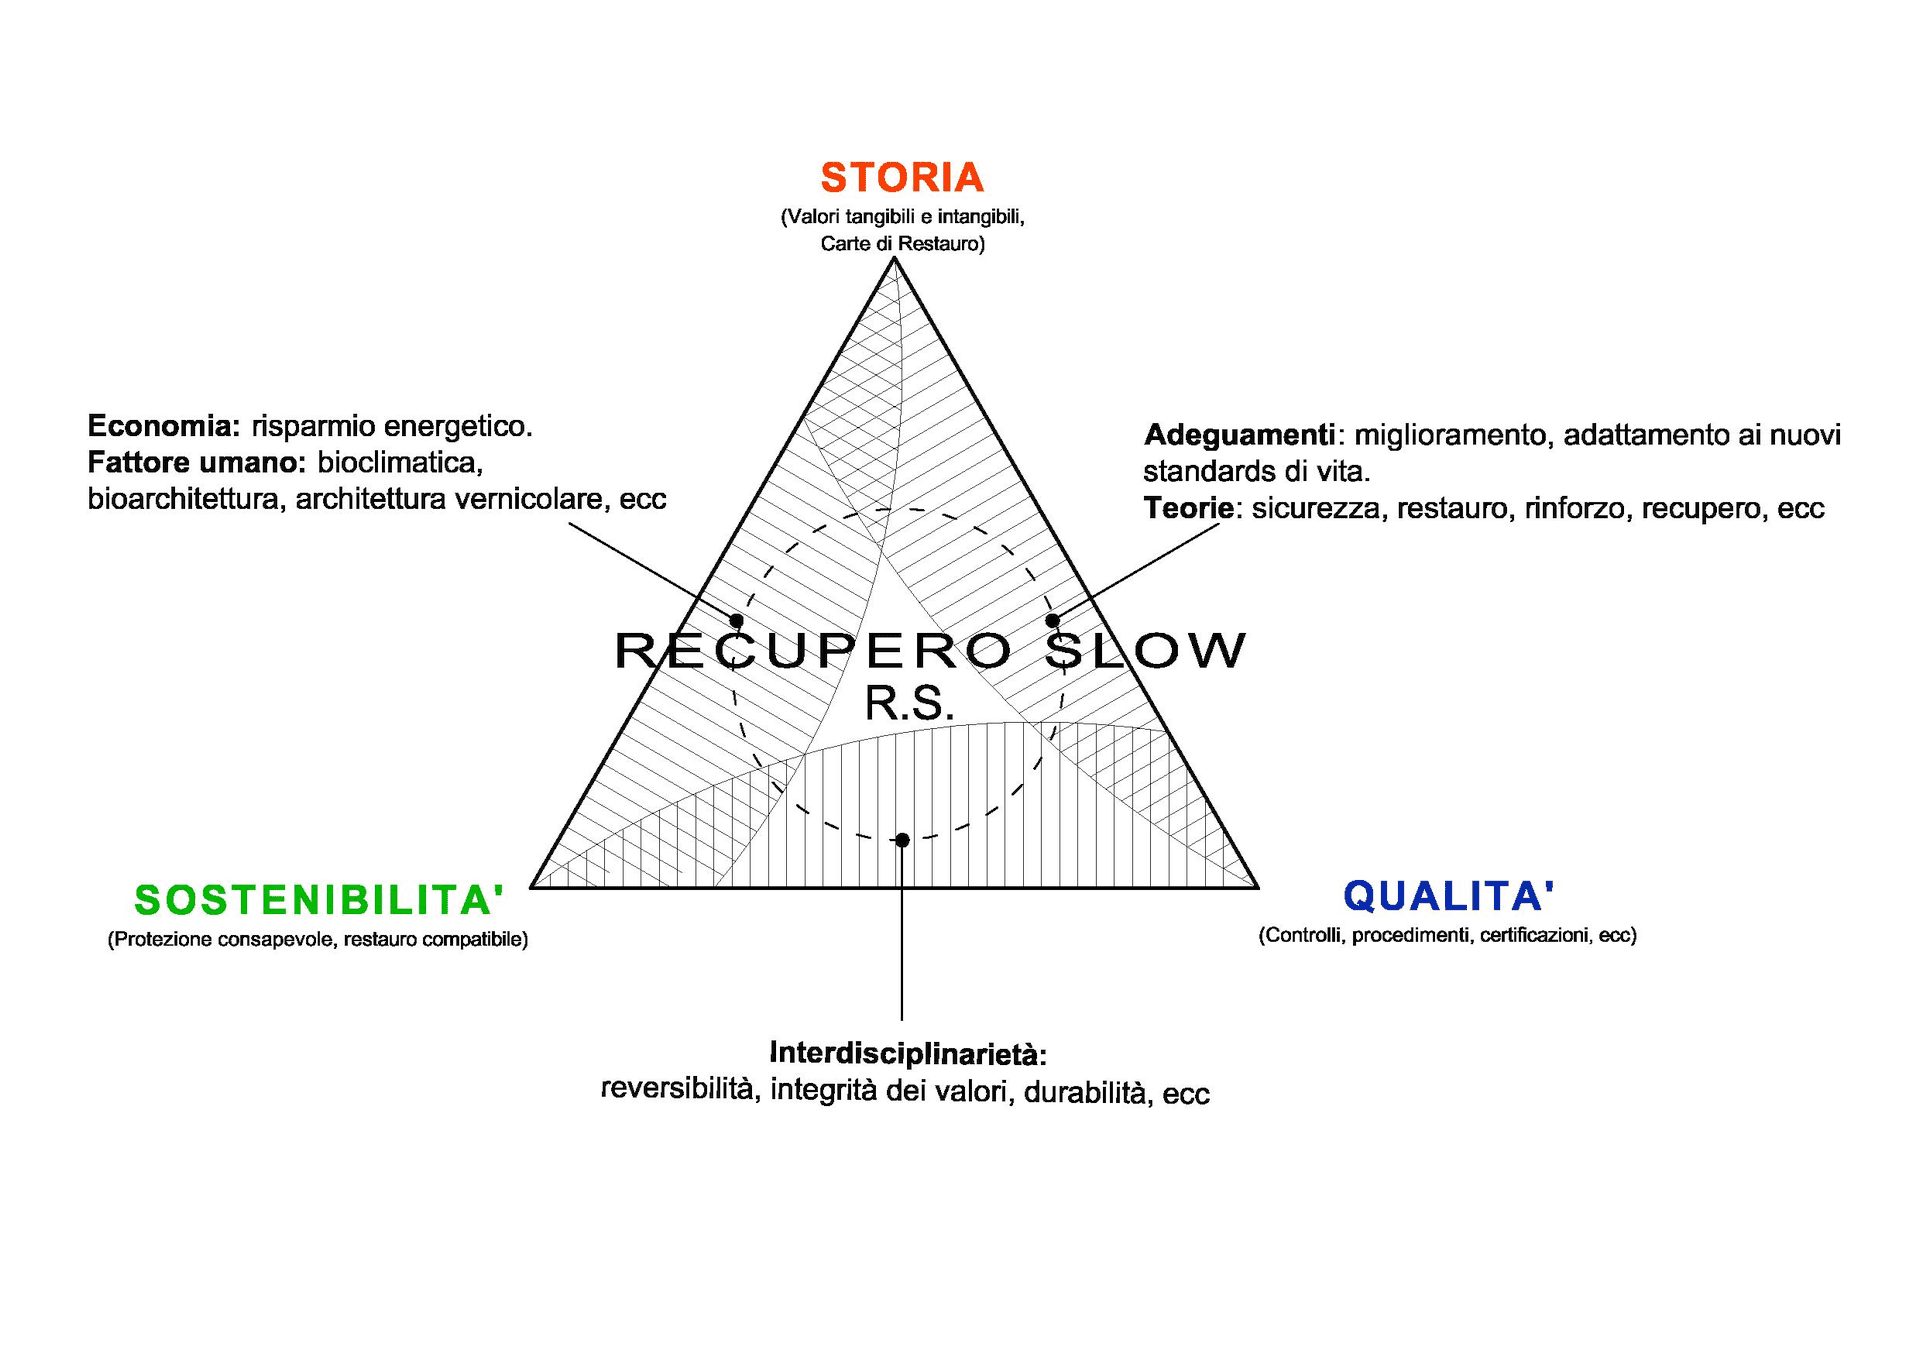 Diagramma della filosofia del restauro.